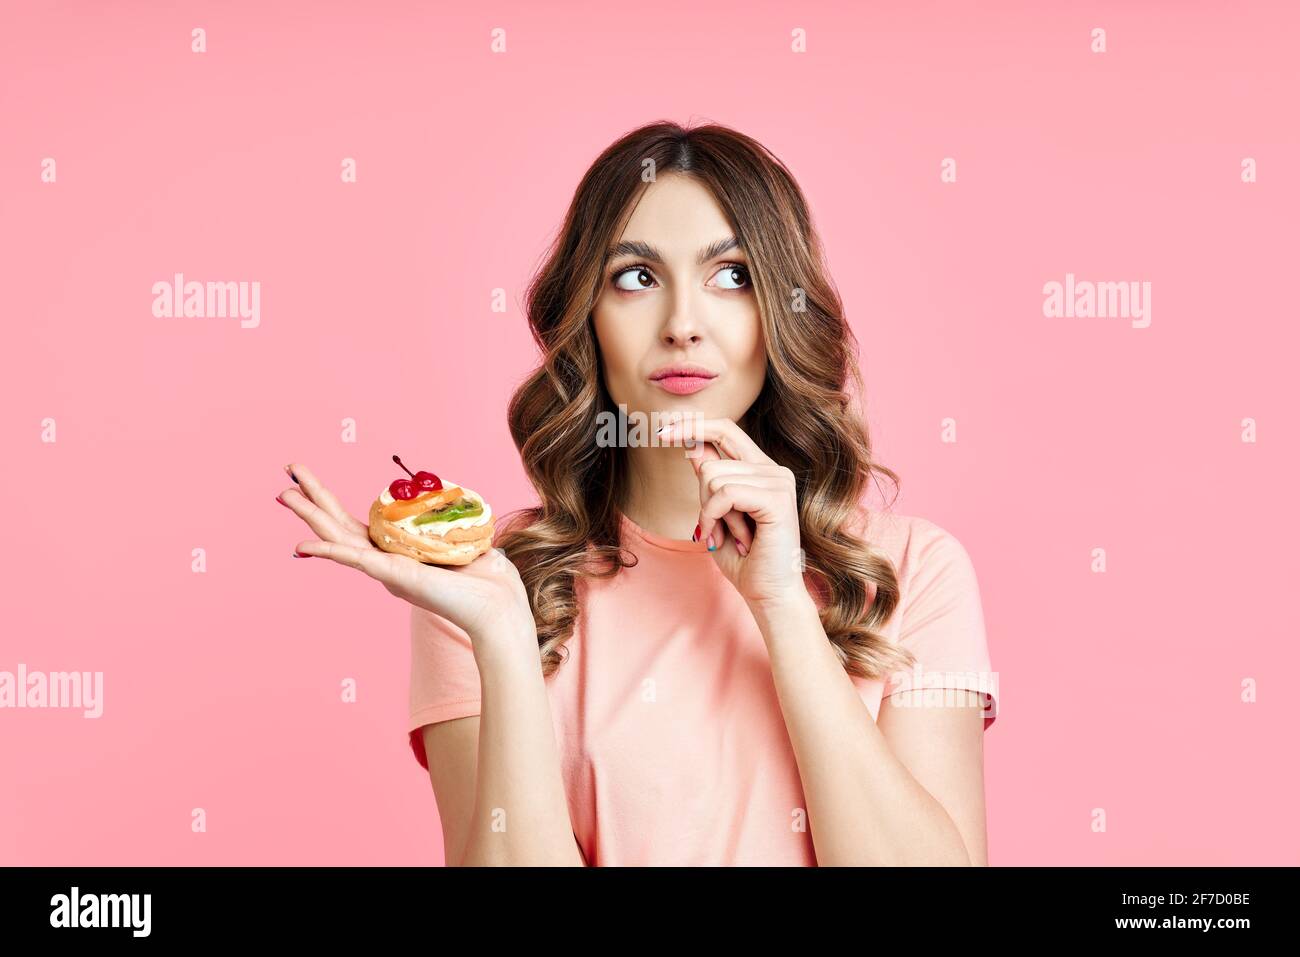 Concept de régime. Une jolie femme embrouillé qui cherche un gâteau de pâtisserie à la main sur fond rose. Perte de poids Banque D'Images